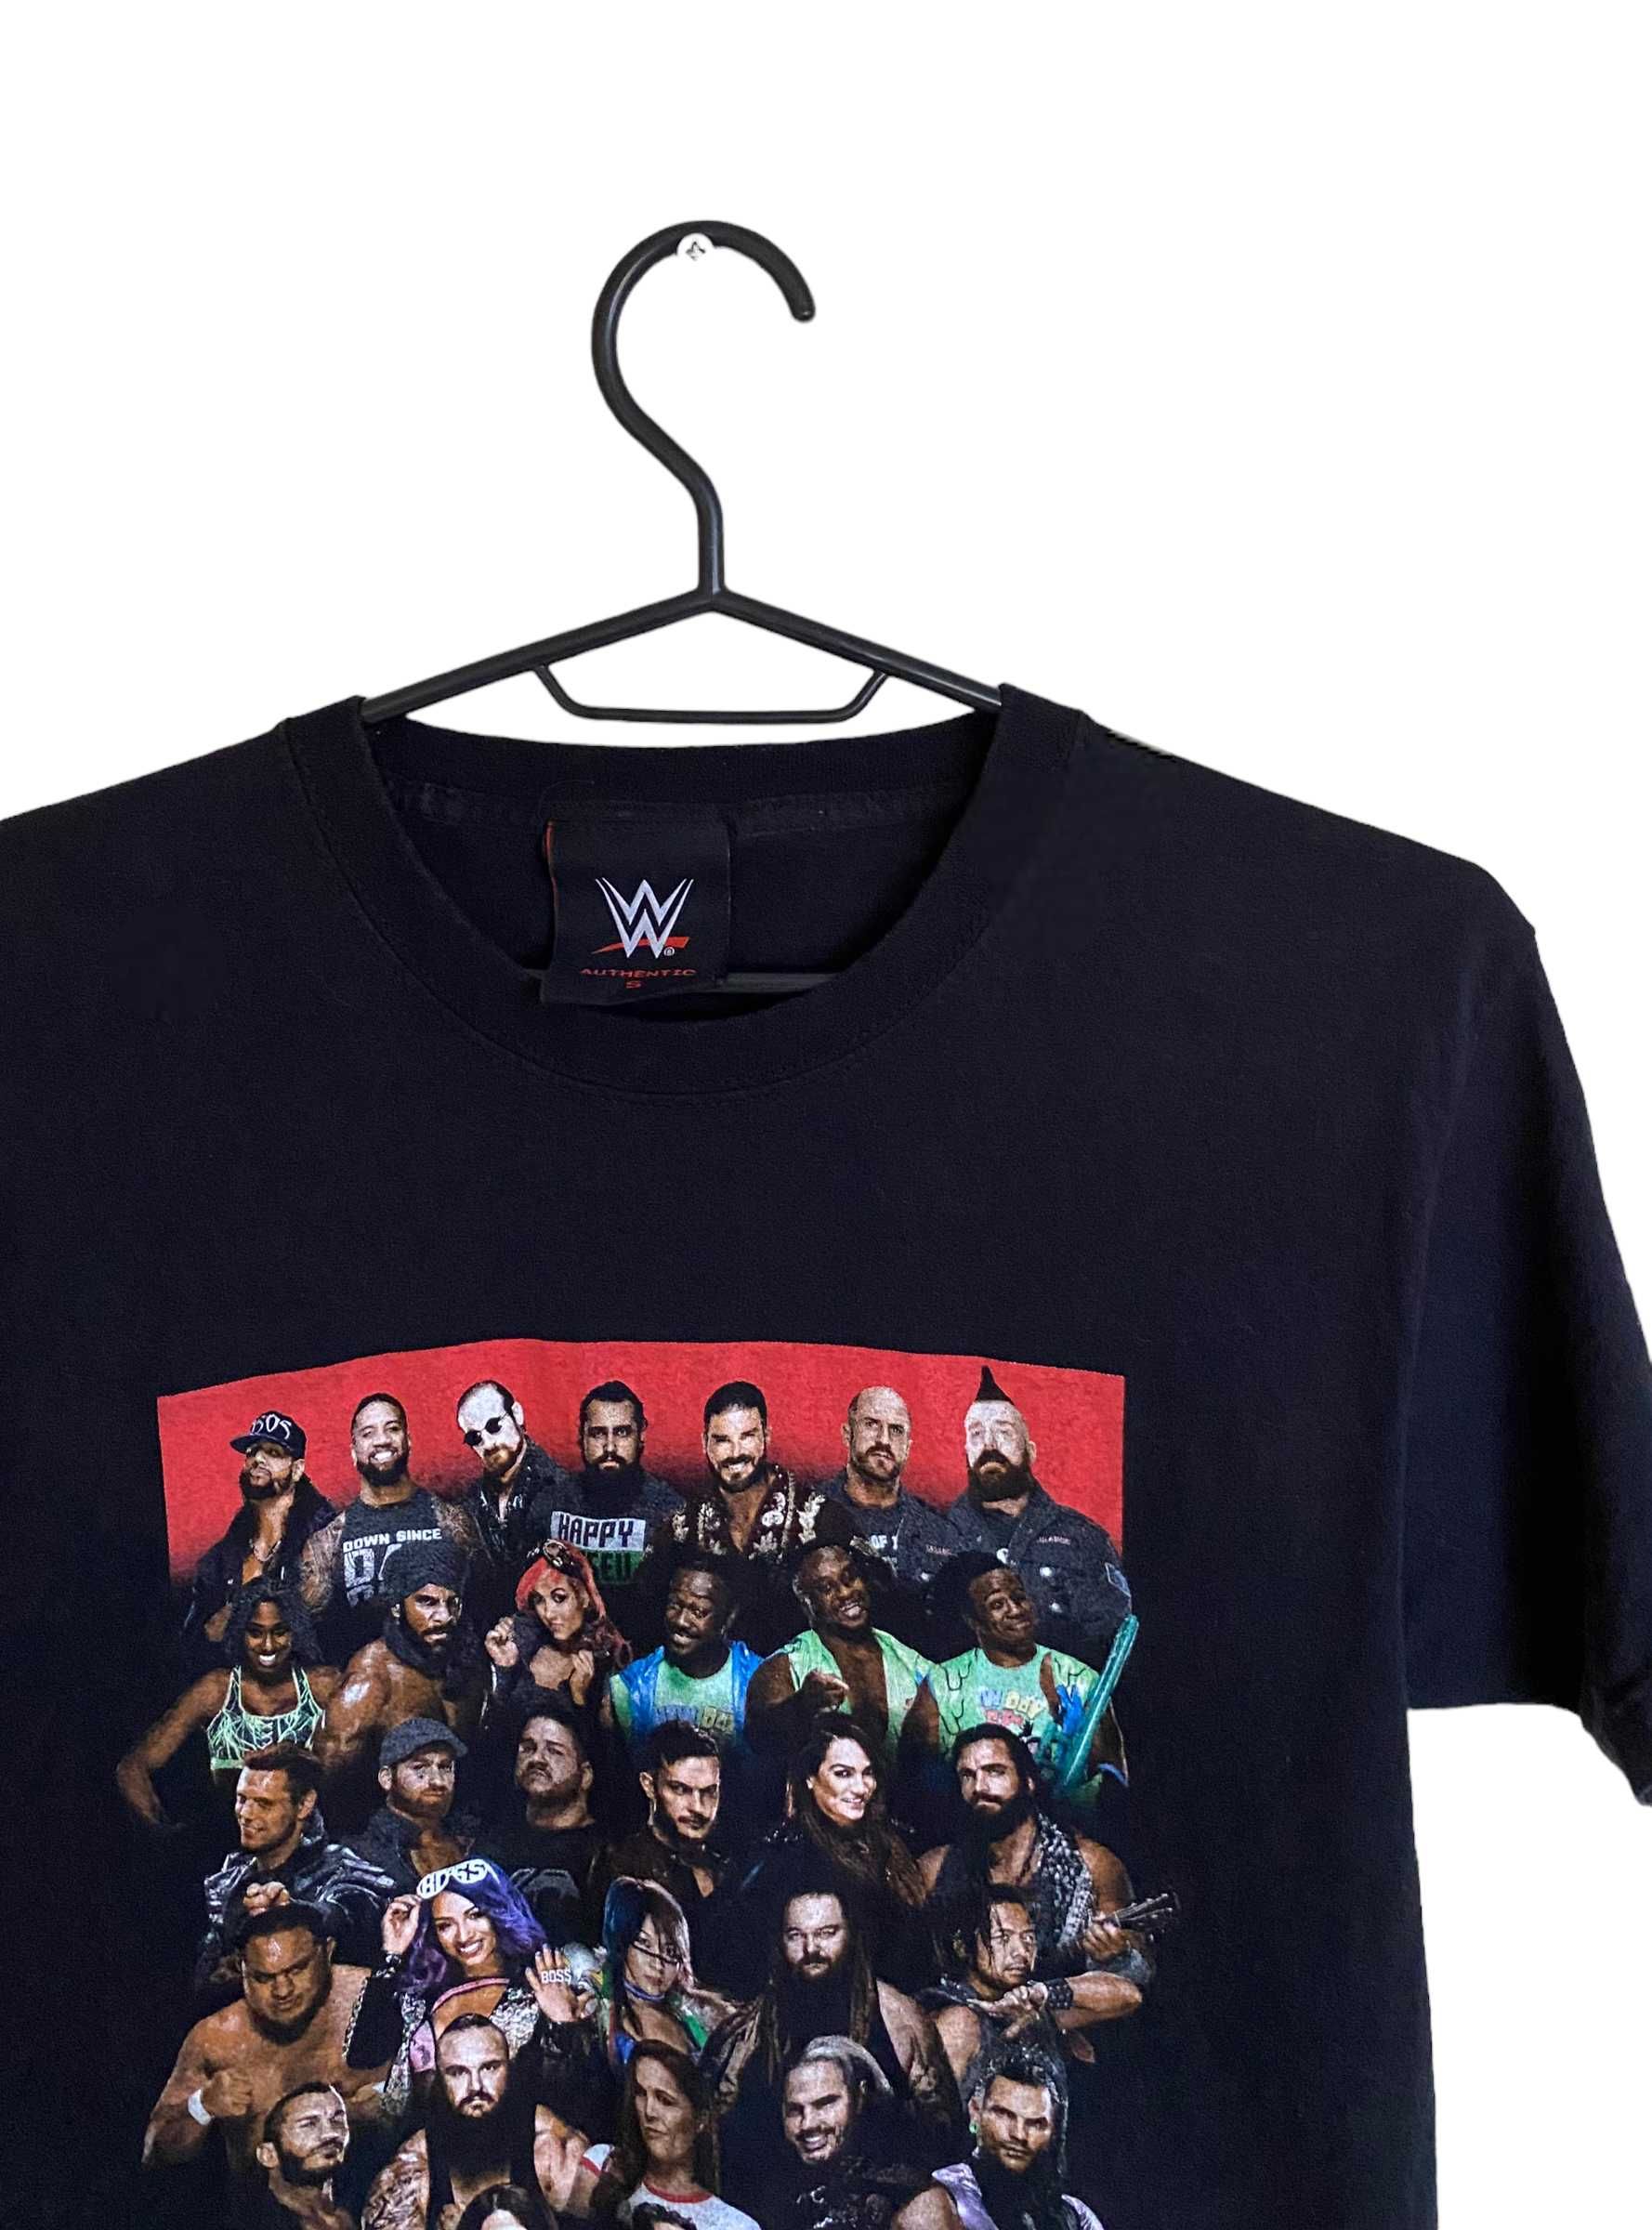 WWE dwustronny t-shirt, rozmiar S, stan bardzo dobry